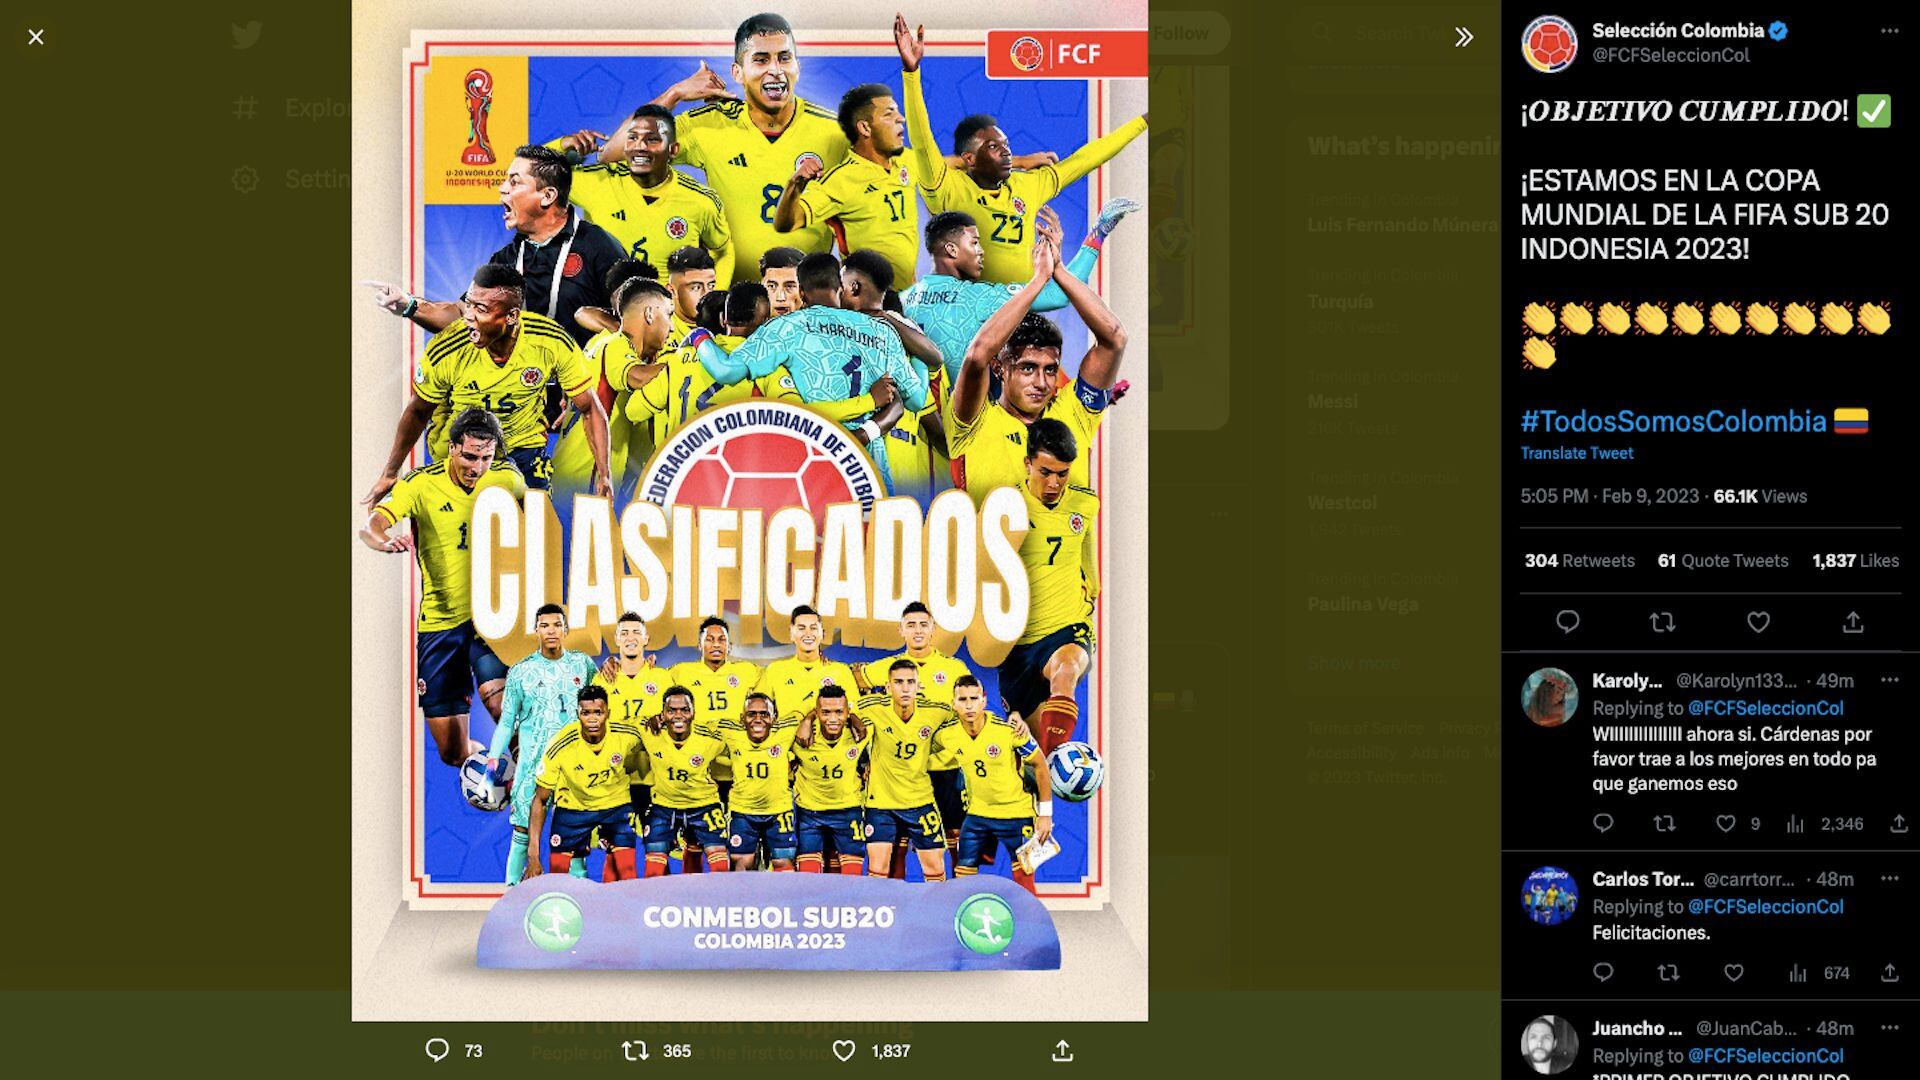 CONMEBOL.com on X: ¡La agenda de partidos de las selecciones sudamericanas  para la fecha FIFA que comienza mañana! ¡Últimos encuentros antes de la  @FIFAWWC 🏆! A agenda de jogos das seleções sul-americanas